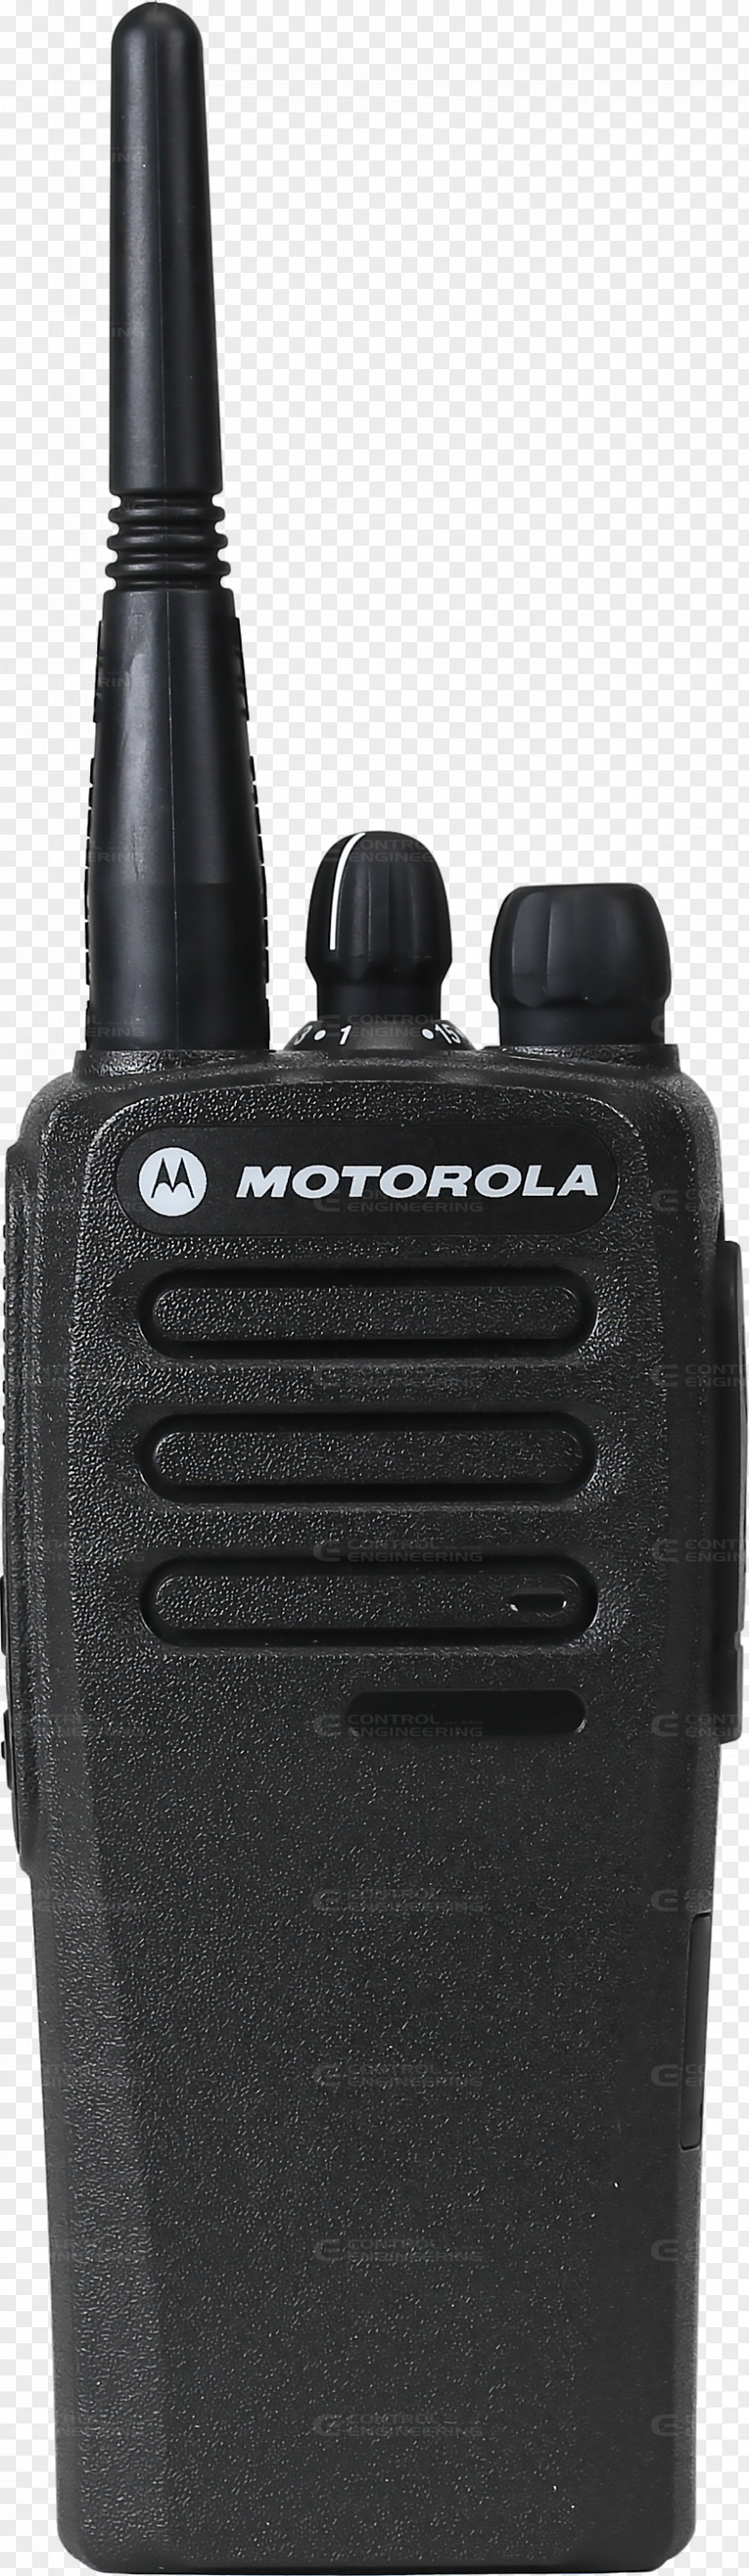 Radio Two-way Motorola Solutions CP200D Walkie-talkie PNG